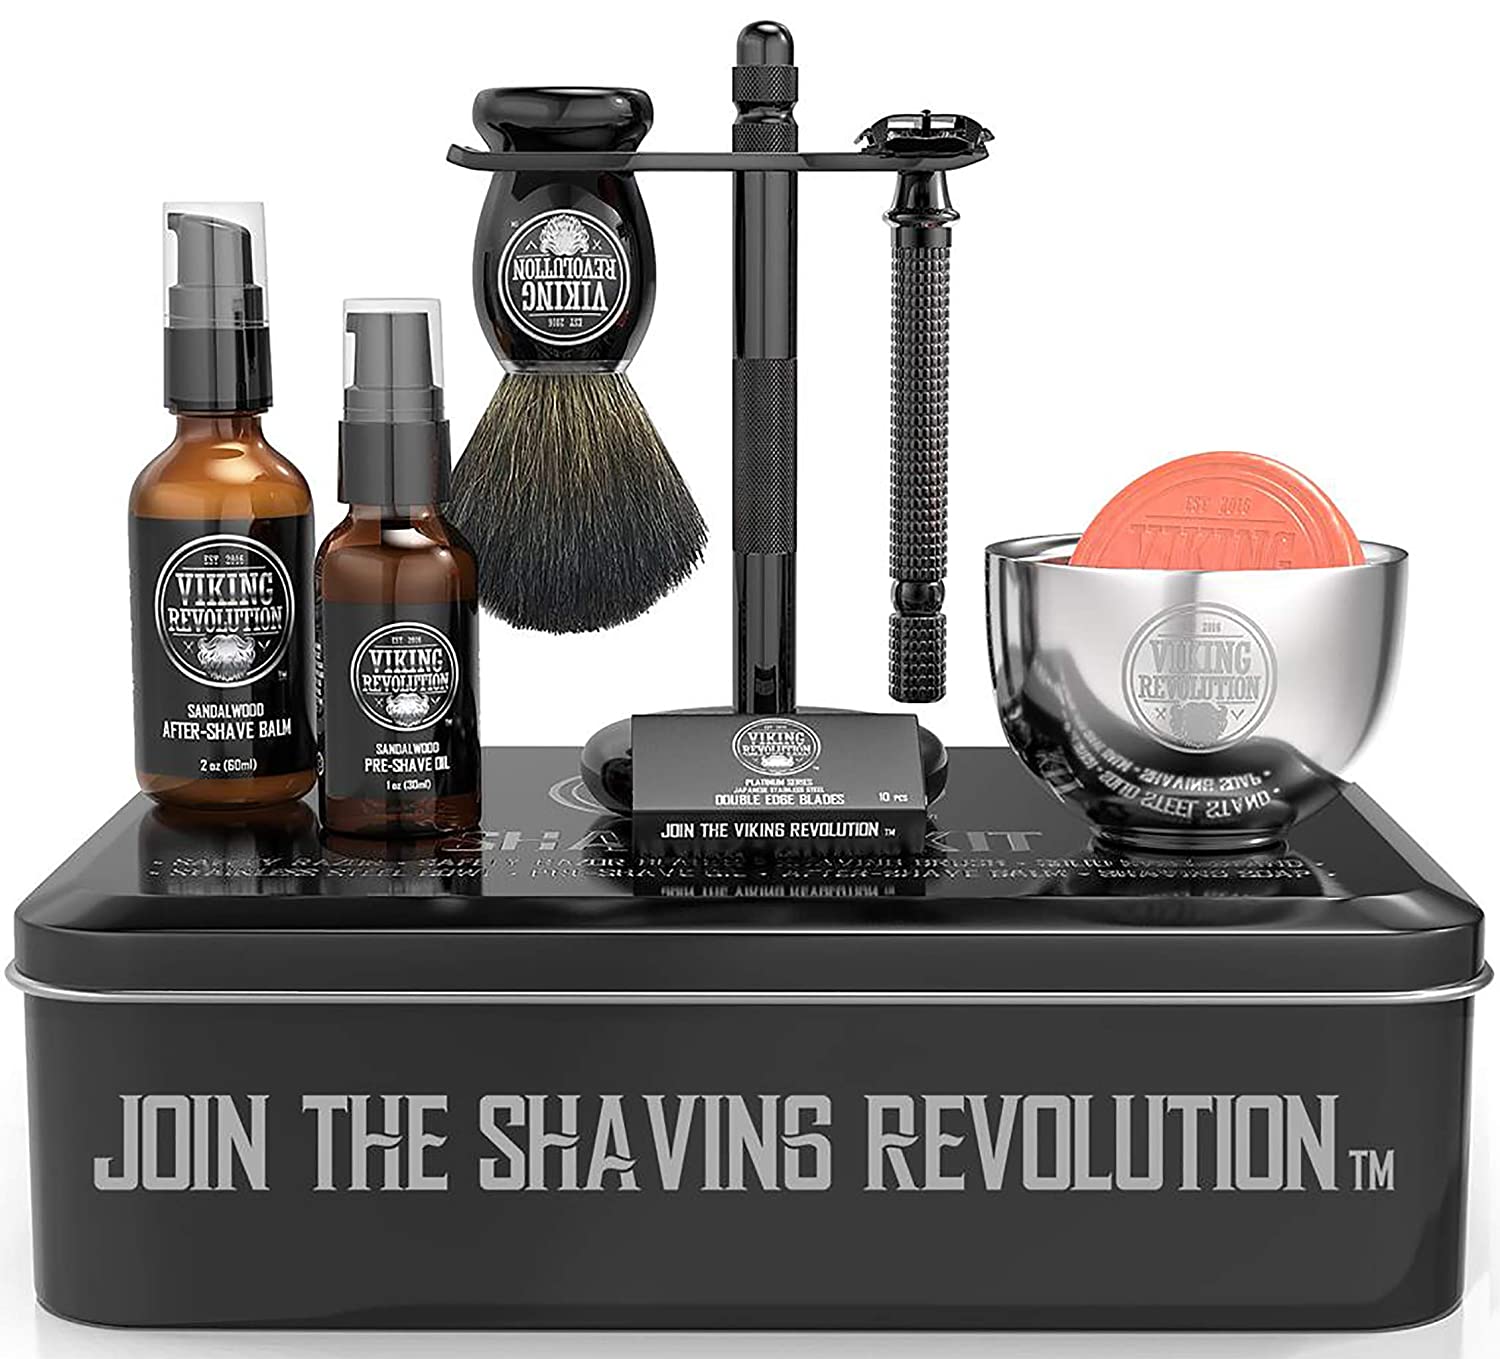 Viking Revolution - Shaving Kit For Men - Shaving Kit with Double Edge Razor, Stand, Bowl & More - Luxury Christmas Gifts For Men - image 10 of 10